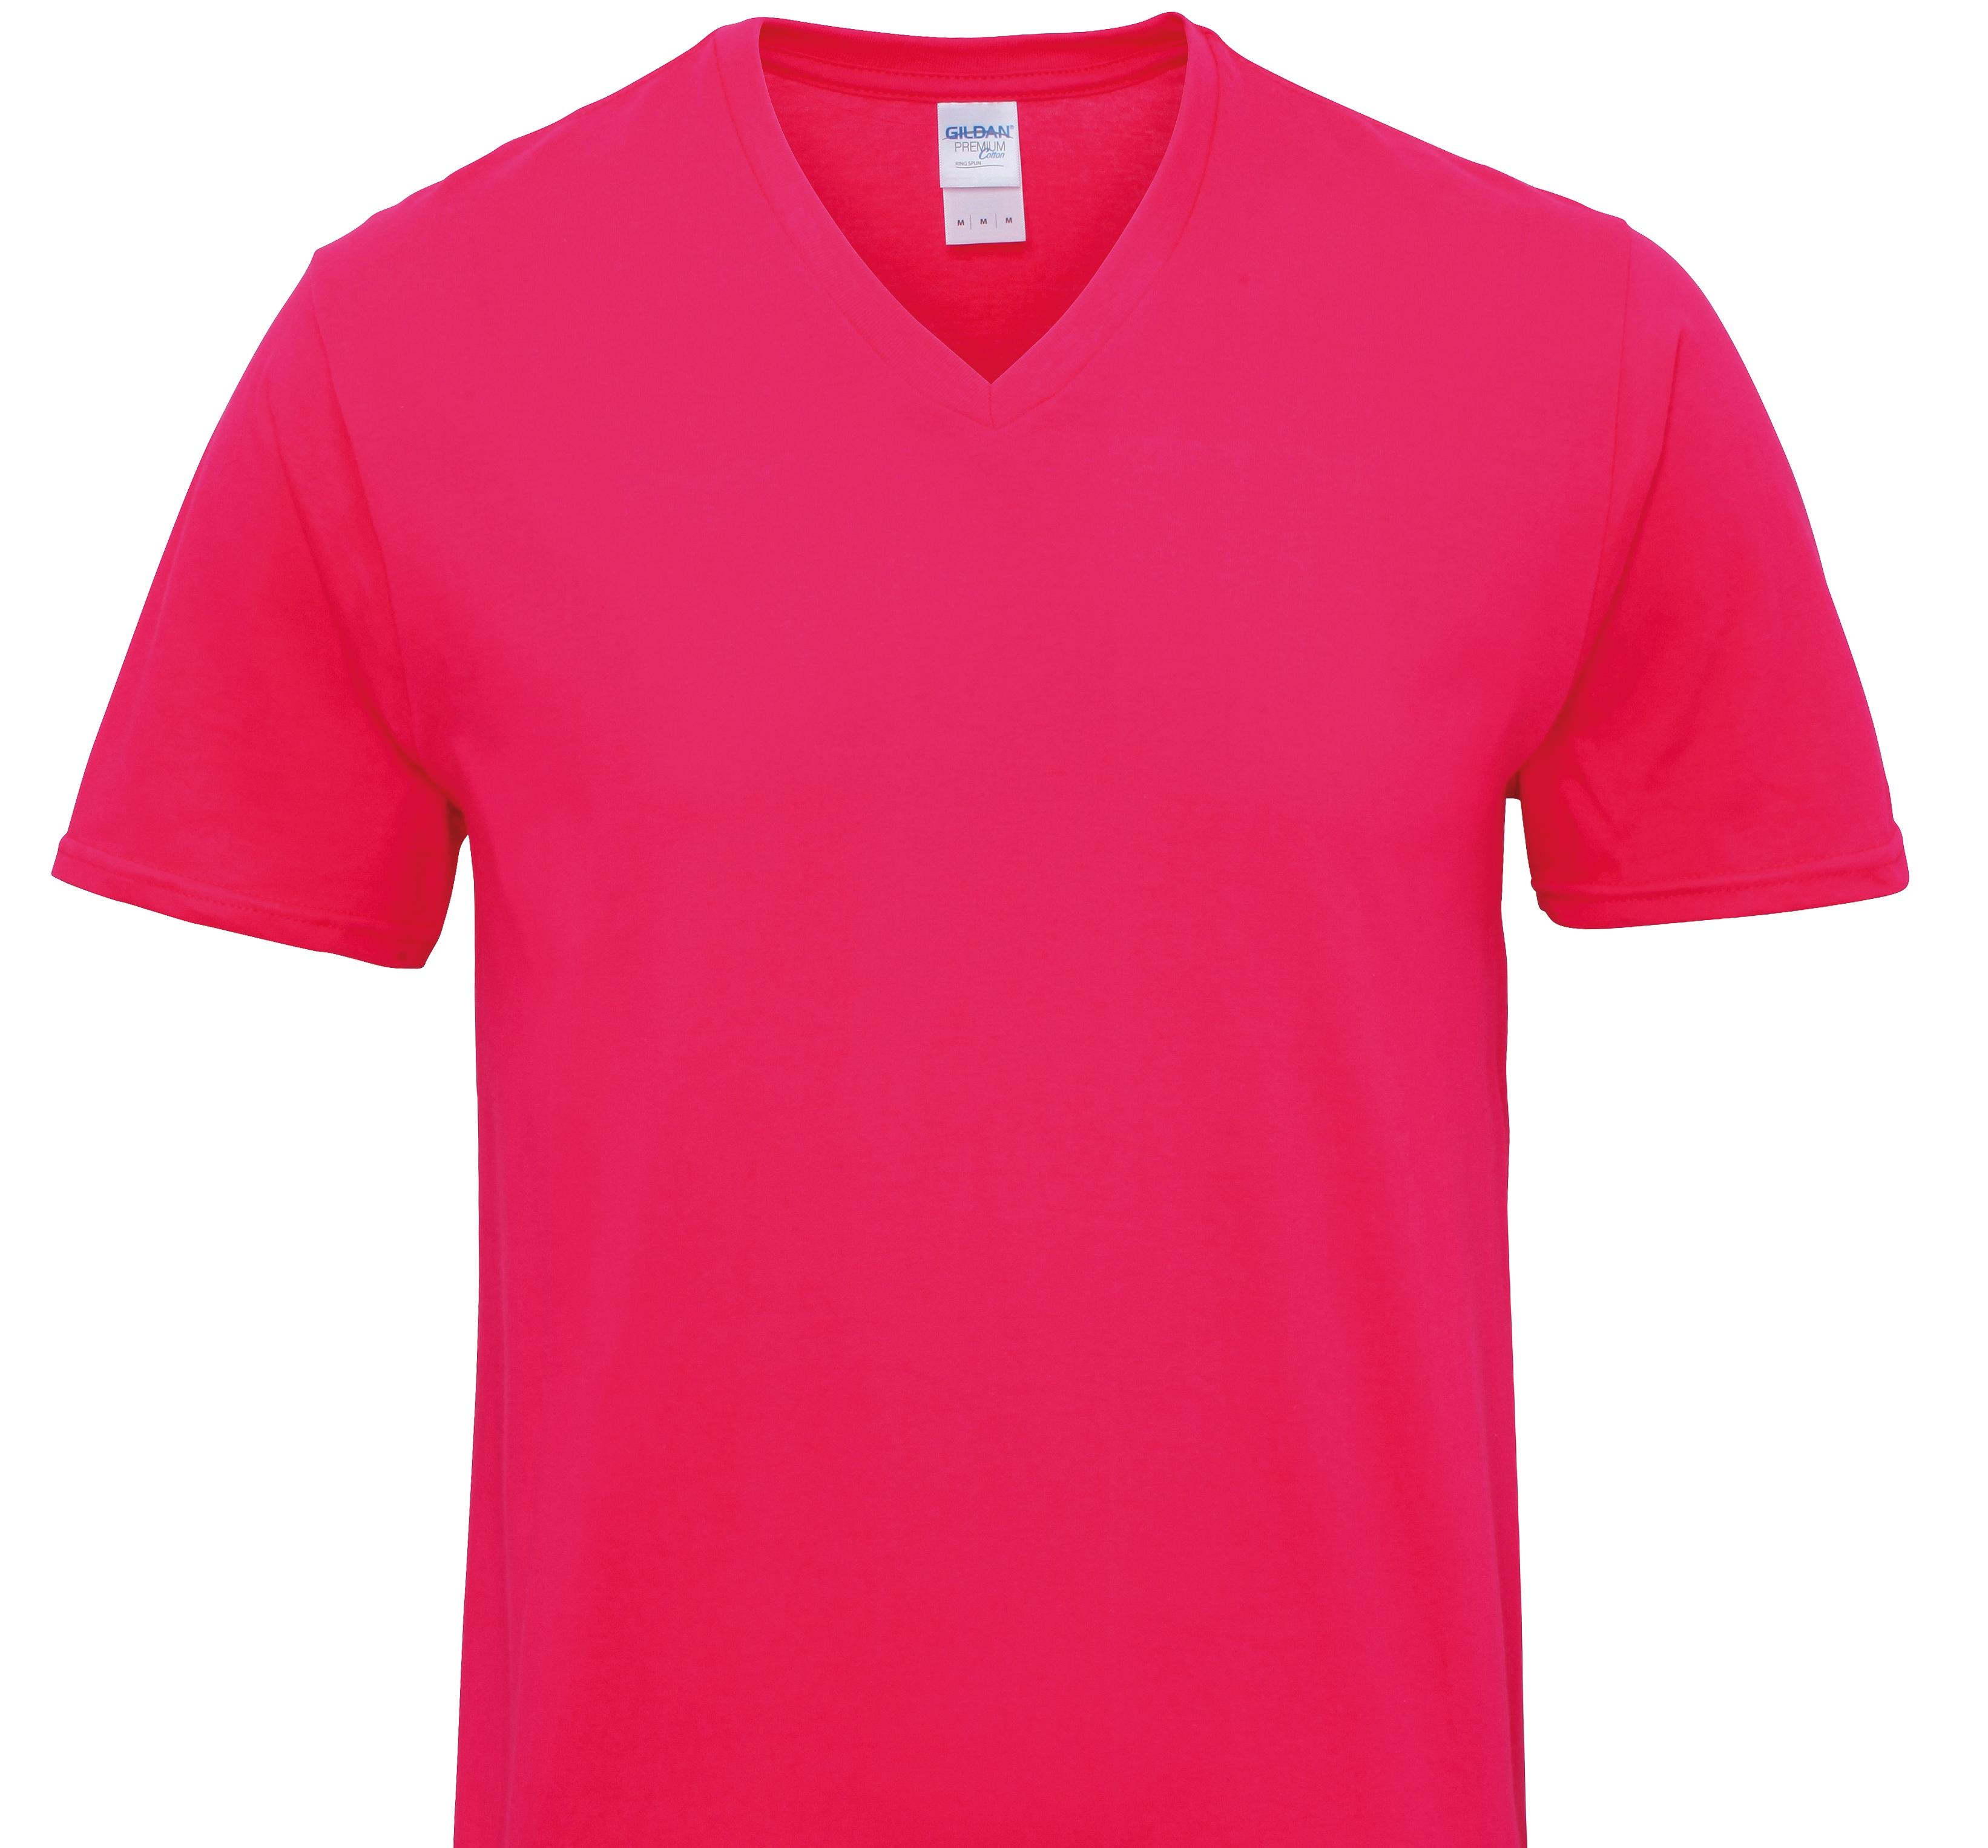 Bolognese T-Shirts Women's V Neck Premium Cotton